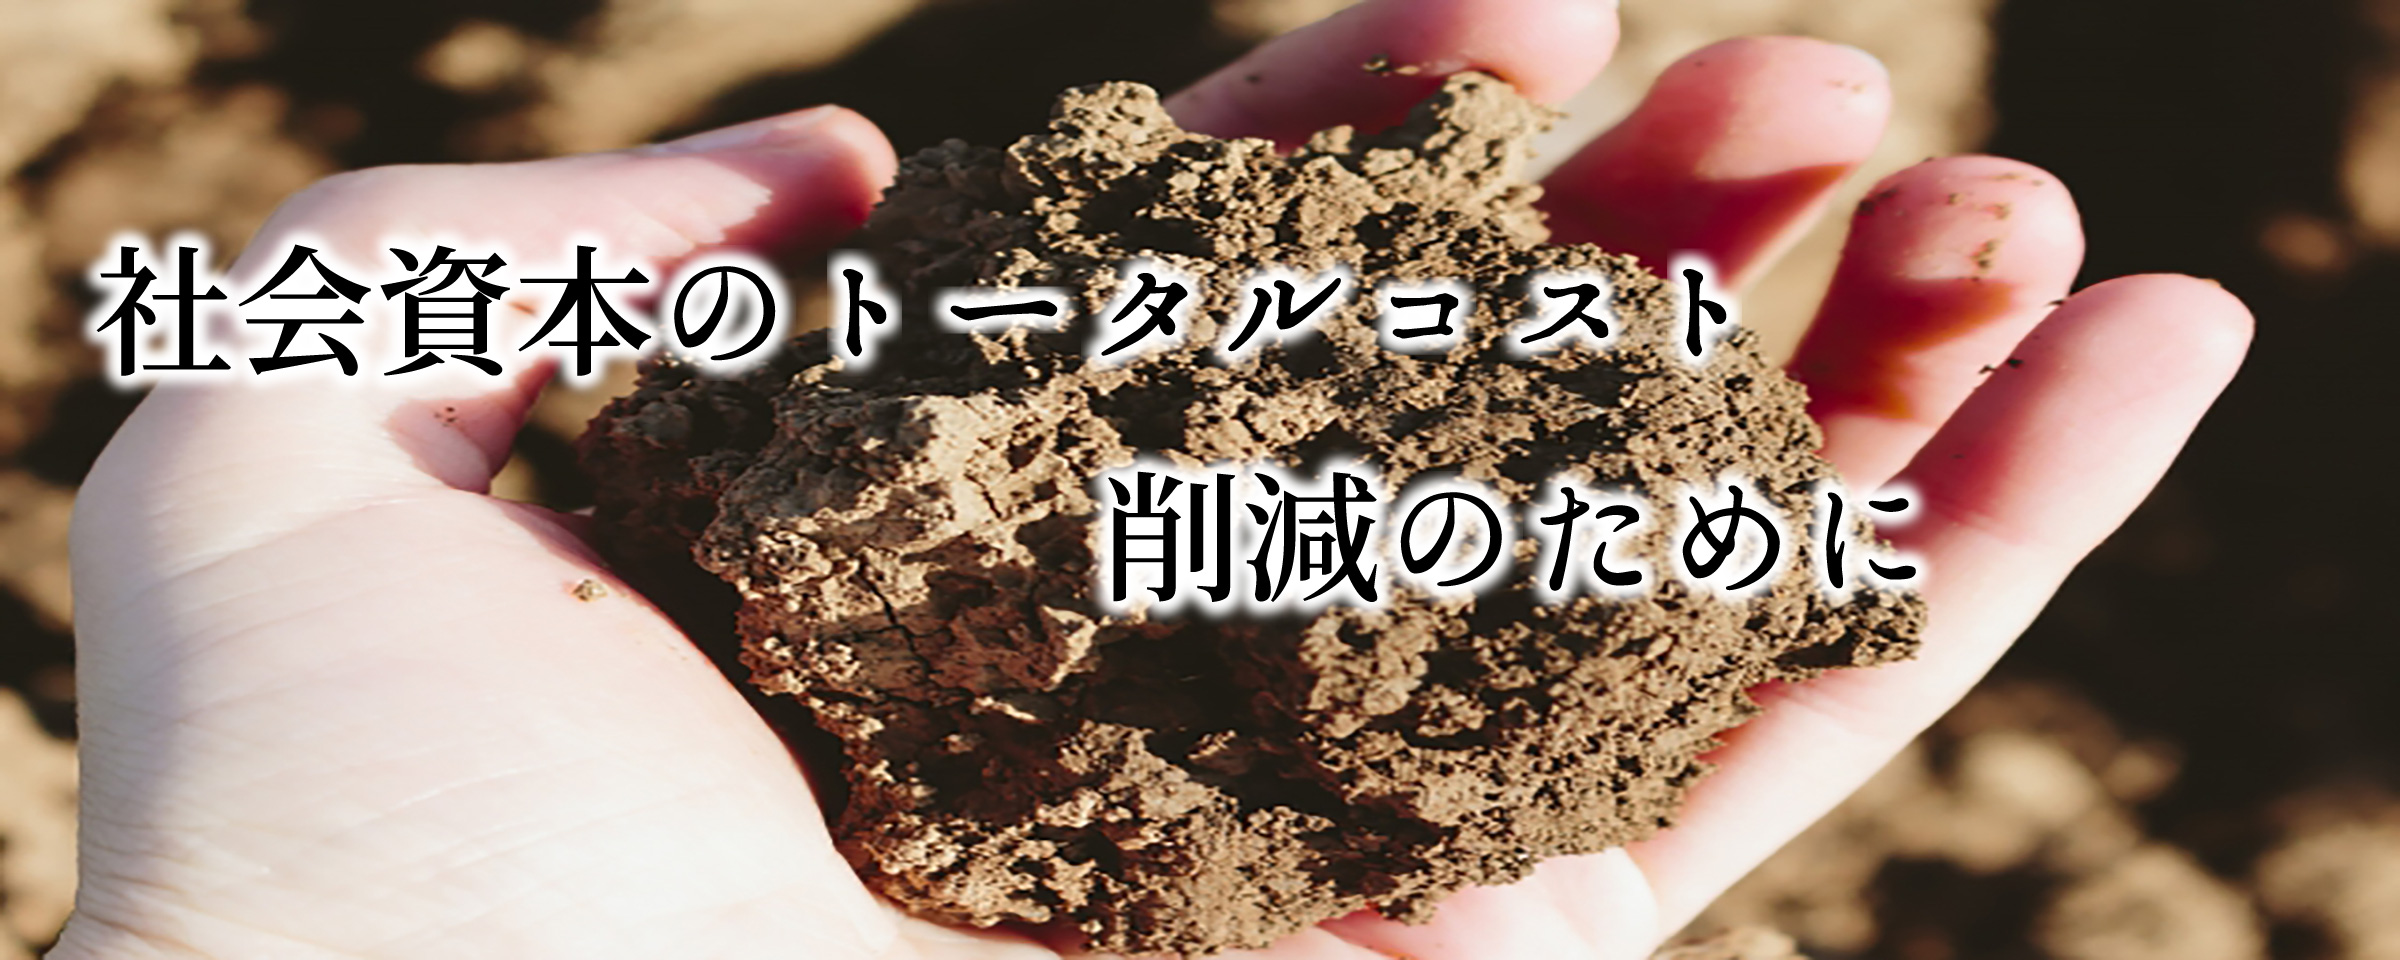 埼玉県内で地質調査の事なら埼玉県地質調査業協会へ